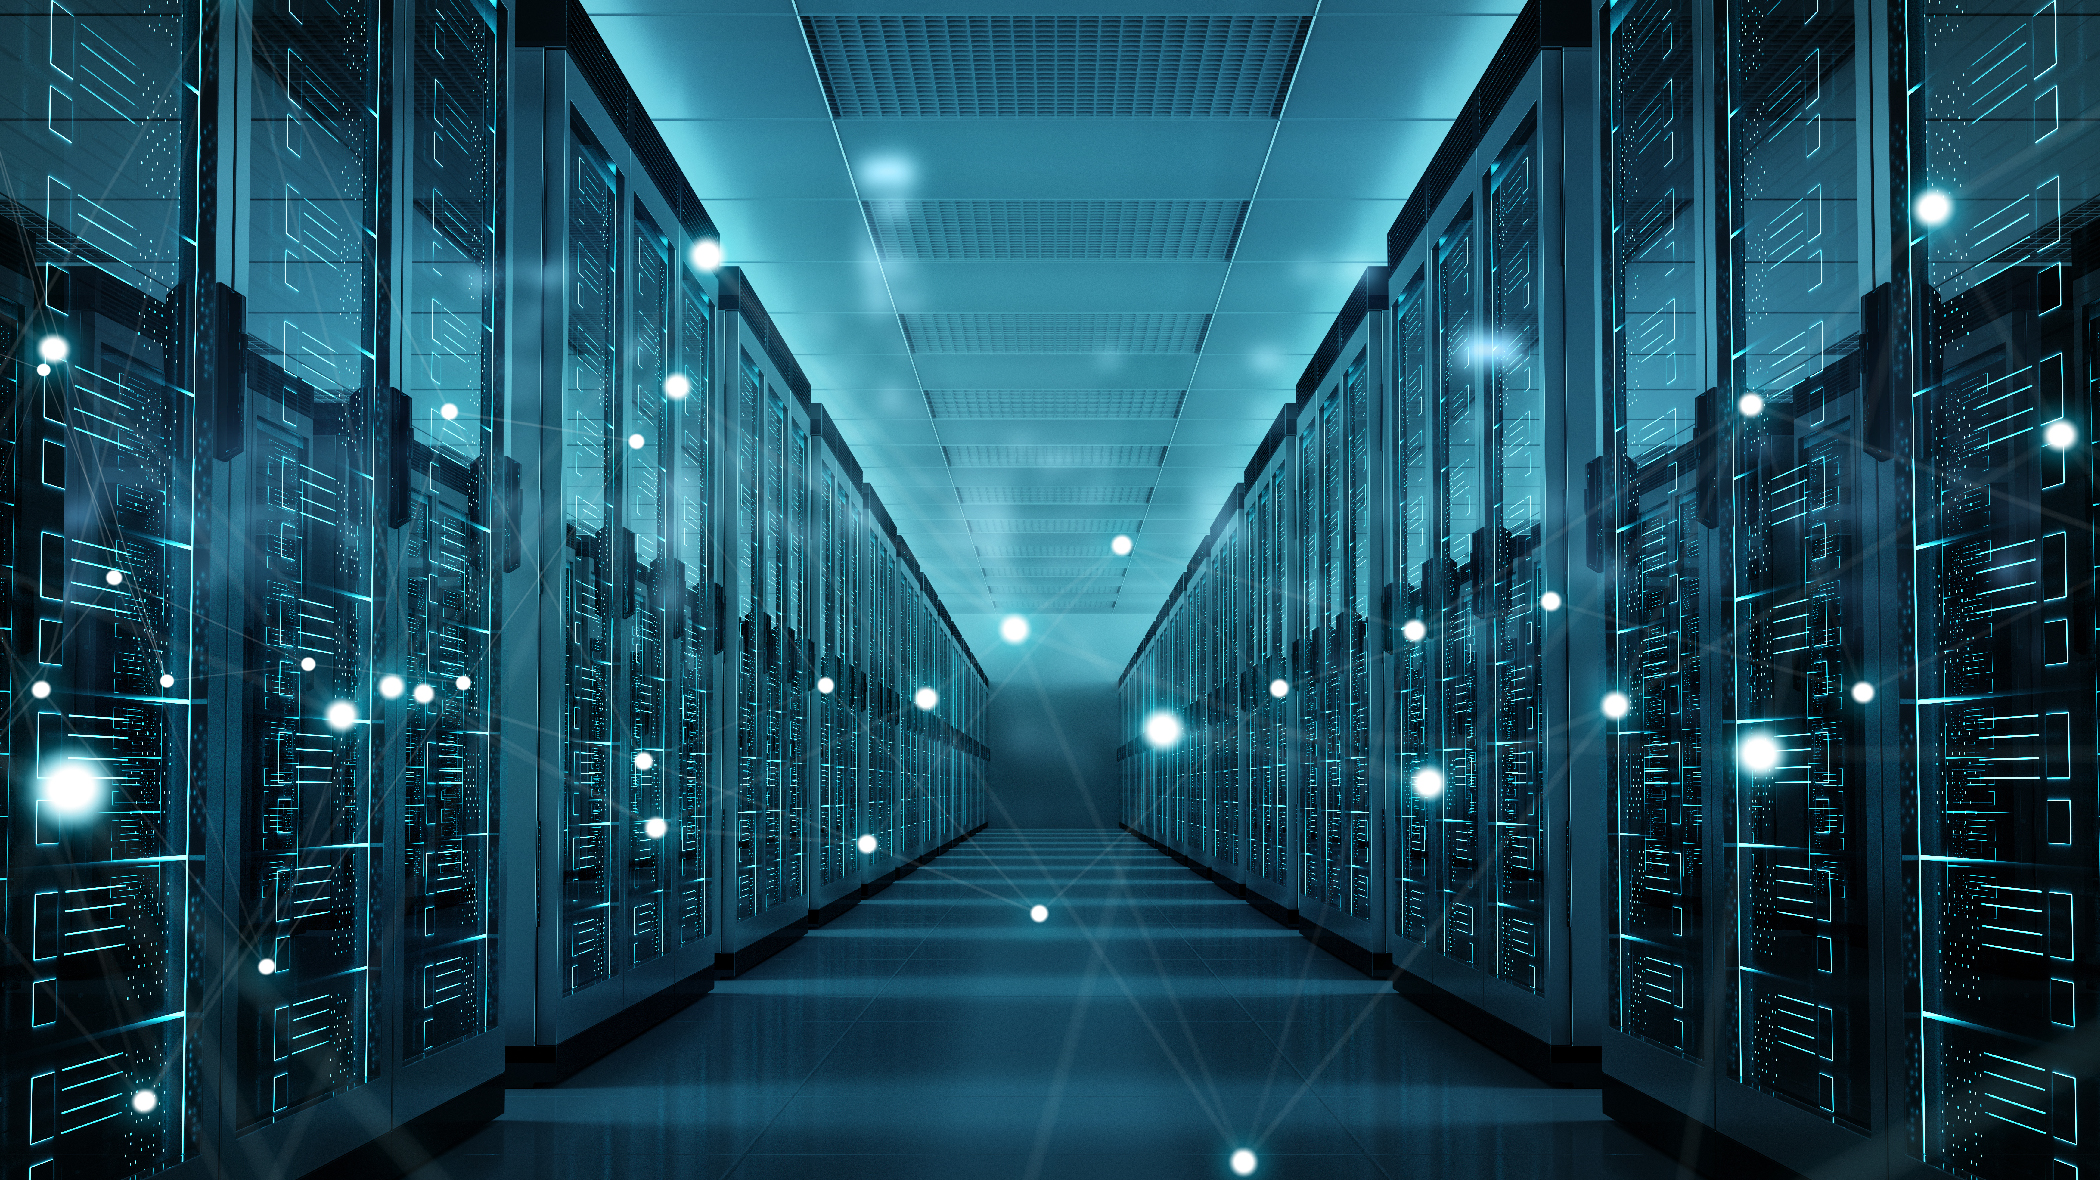  غرفة خادم تكنولوجيا المعلومات بظلال من اللون الأزرق ومتداخلة مع شبكة من النقاط المترابطة